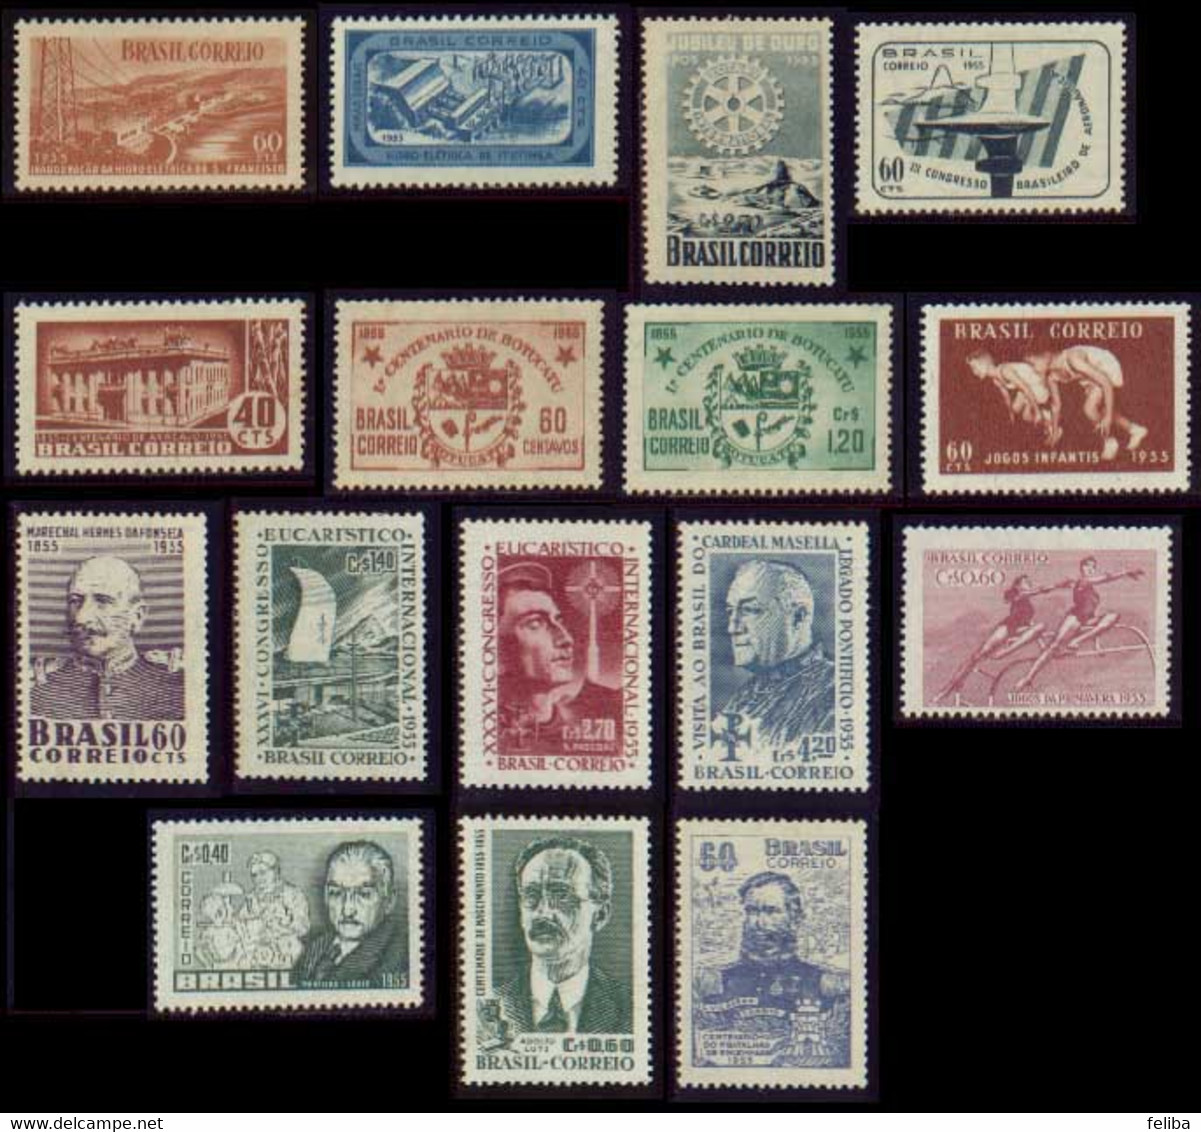 Brazil 1955 Unused Commemorative Stamps - Annate Complete